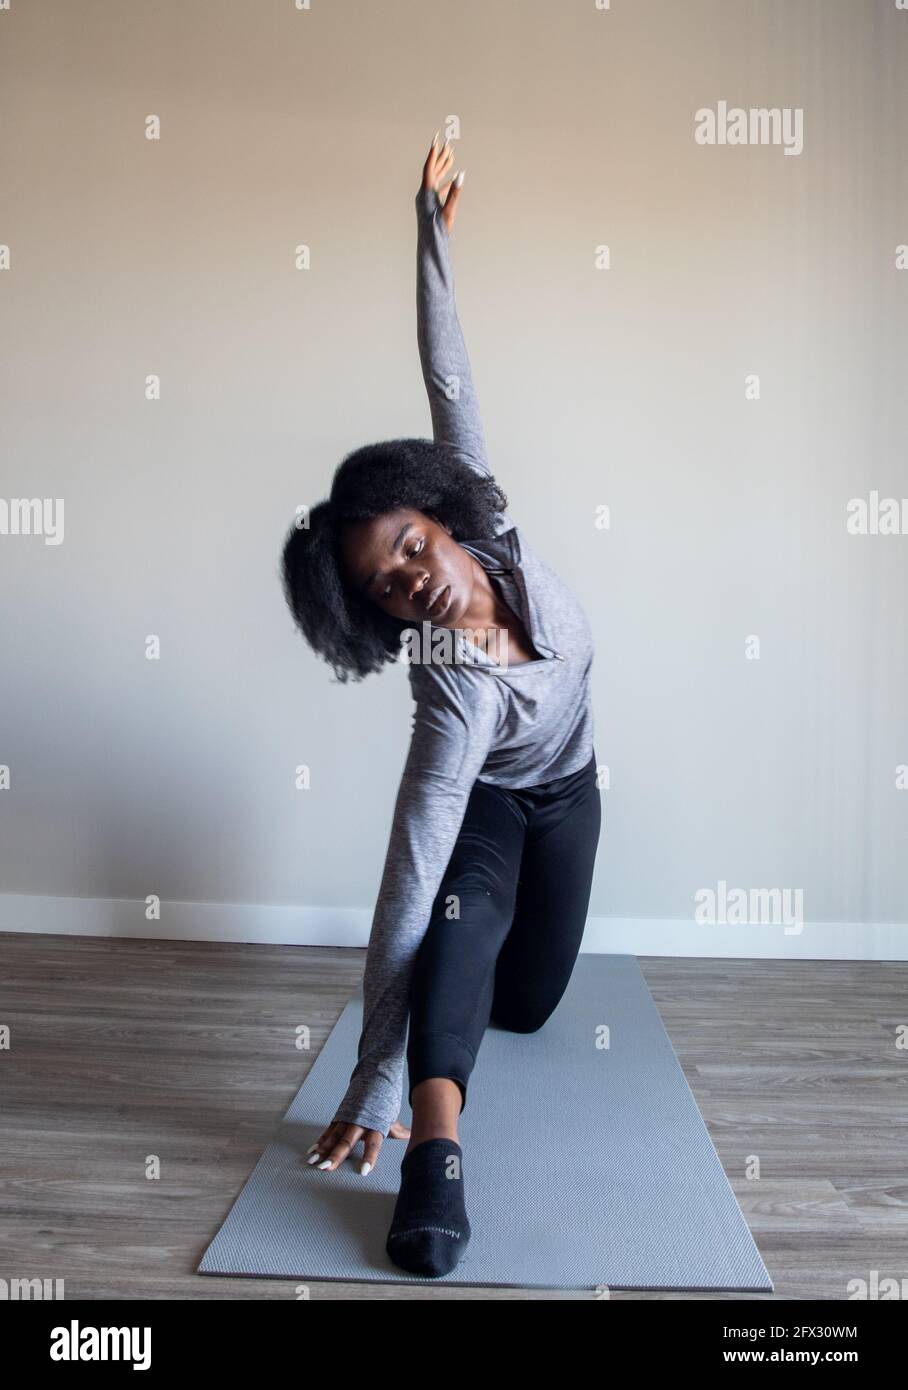 Attraktive junge natürliche Haare weiblich in umgekehrter Kriegerpose auf Yoga-Matte, eine Person, nahaufnahme, afroamerikanisch, schwarze Frau, afrikanisches Modell, Stockfoto